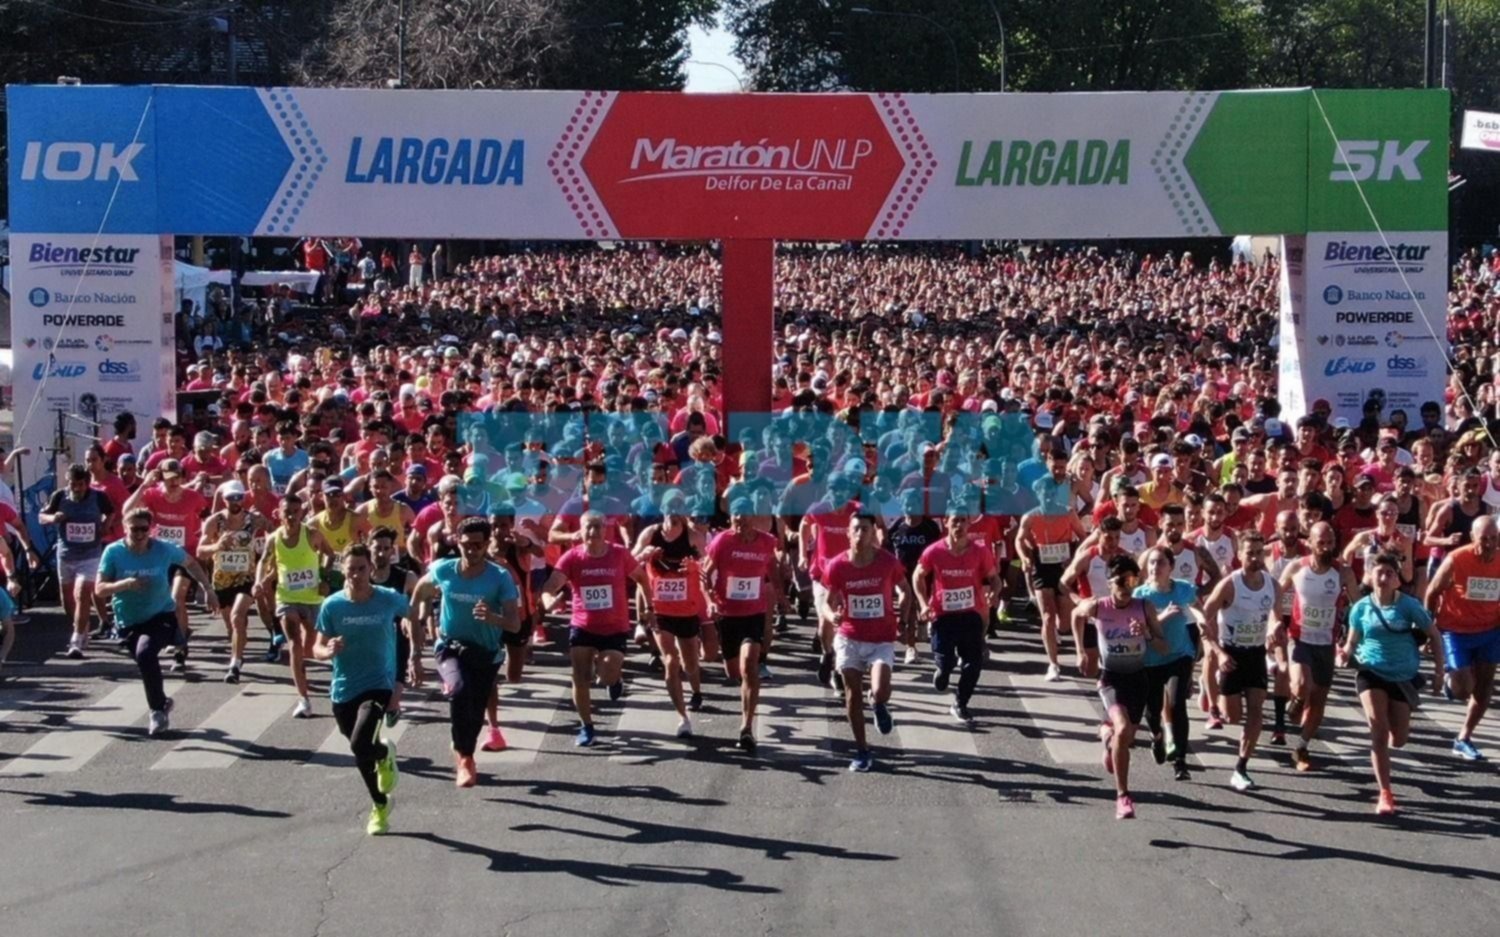 Se corrió la Maratón "Delfor de la canal" en Plaza Moreno